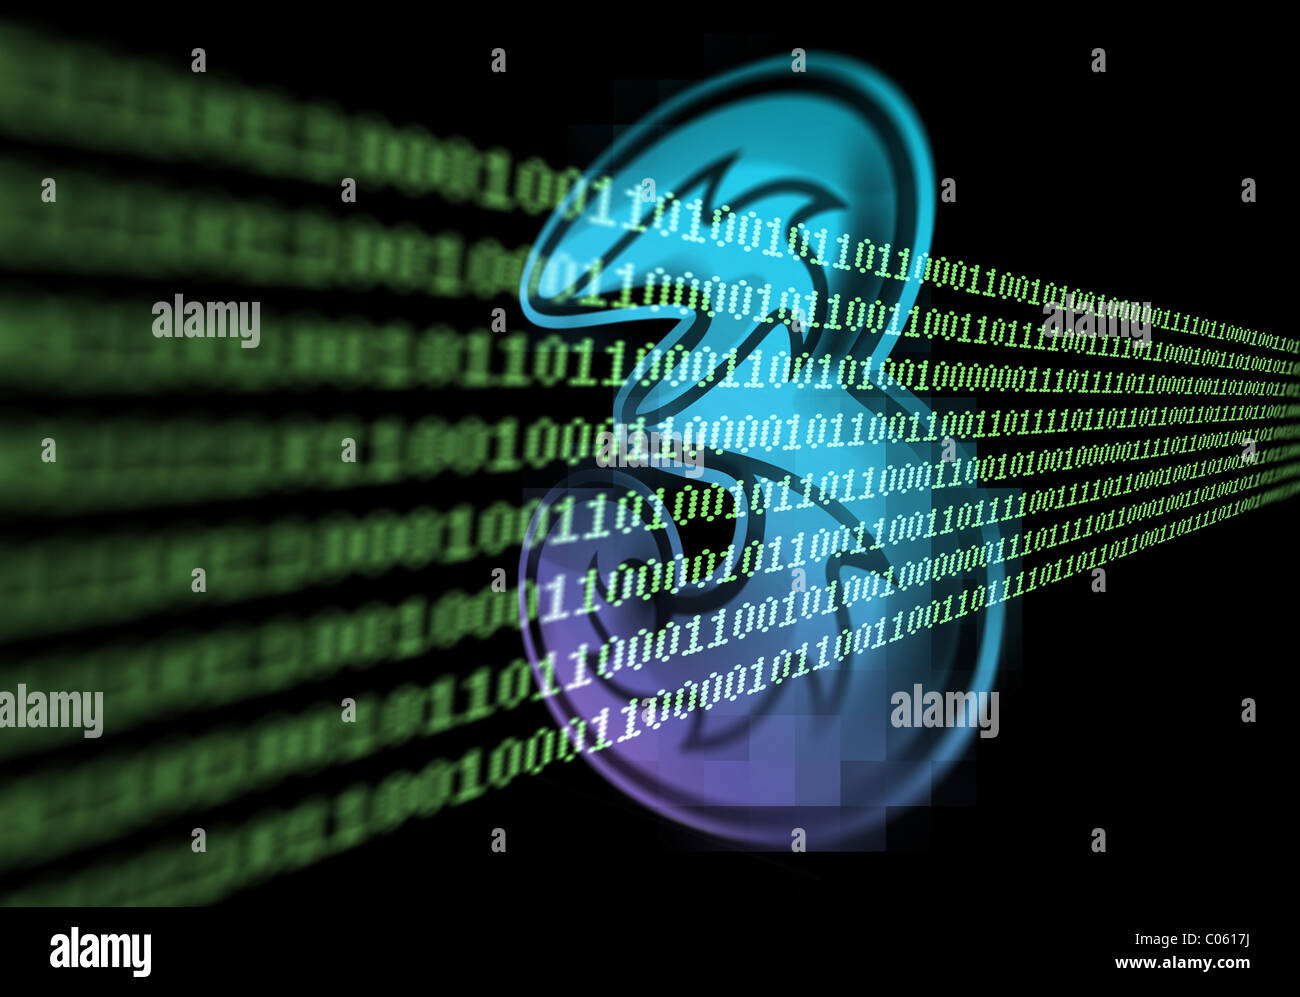 Foto-Illustration der 3 (drei) Mobile-Network-Logo mit Daten-Streams, Datennutzung, Daten Begrenzung darstellt gemischt Stockfoto